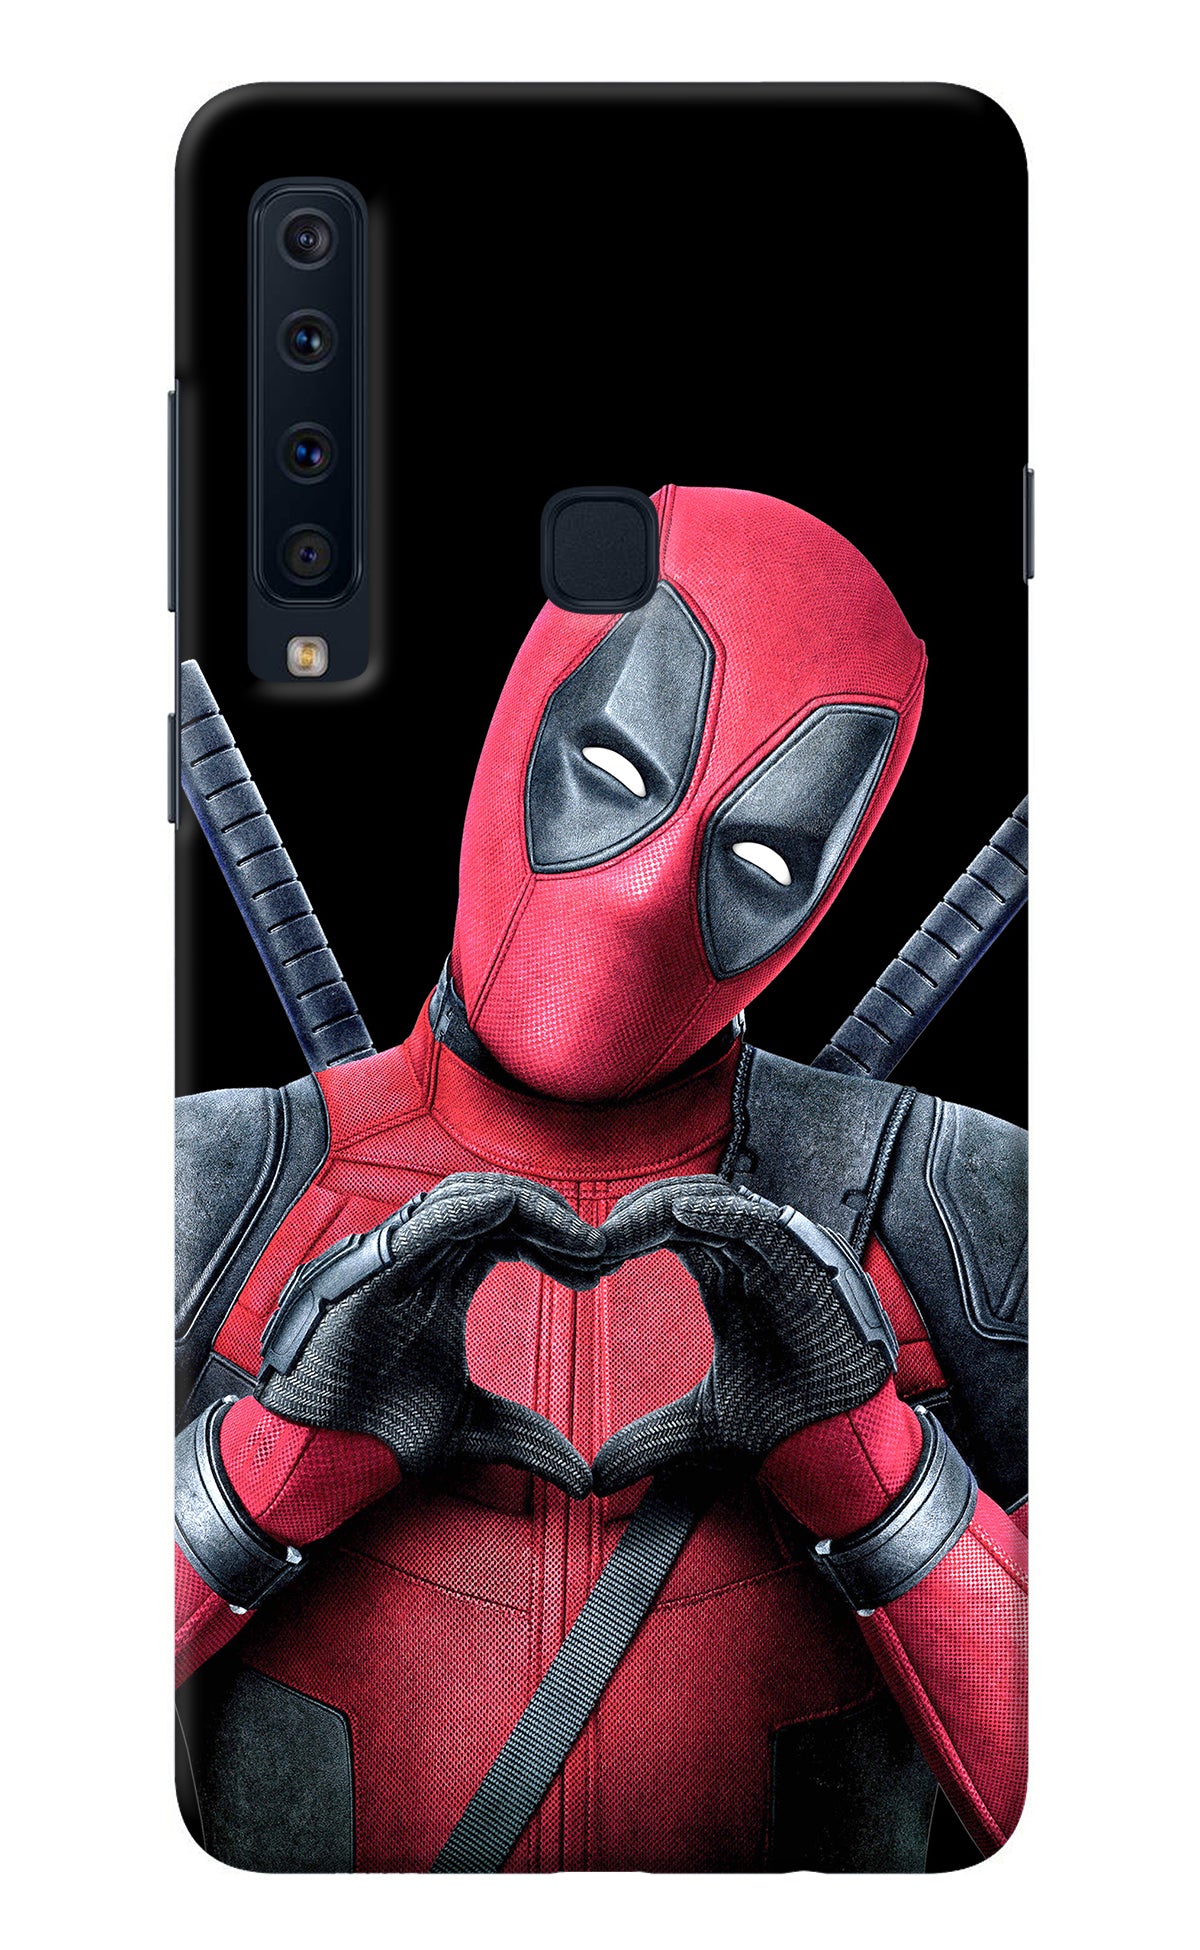 Deadpool Samsung A9 Back Cover